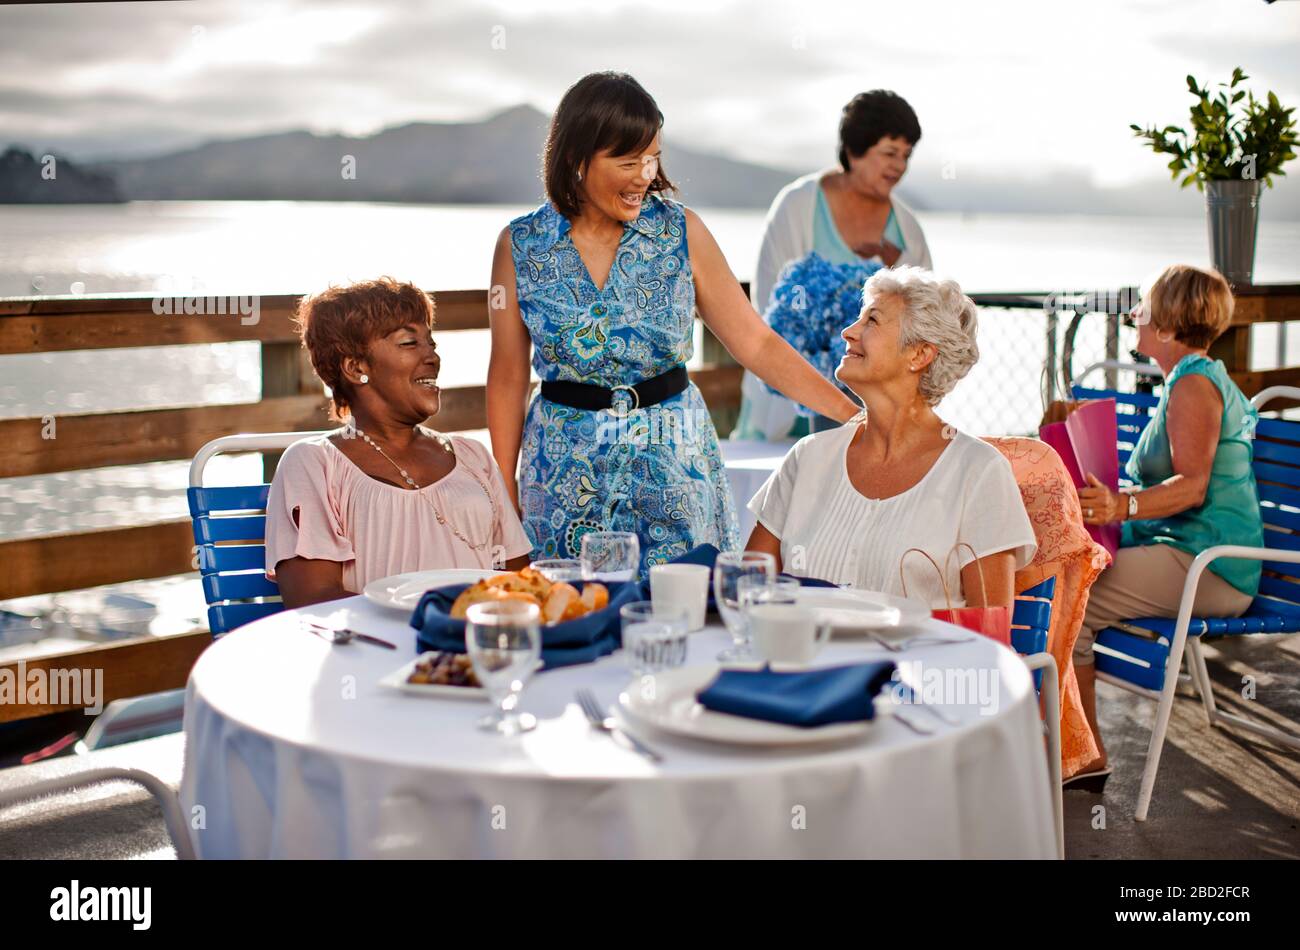 Zwei reife weibliche Freunde, die zum Mittagessen in einem Restaurant am Meer unterwegs sind, lachen mit einem bekannten, der Hallo gesagt hat. Stockfoto